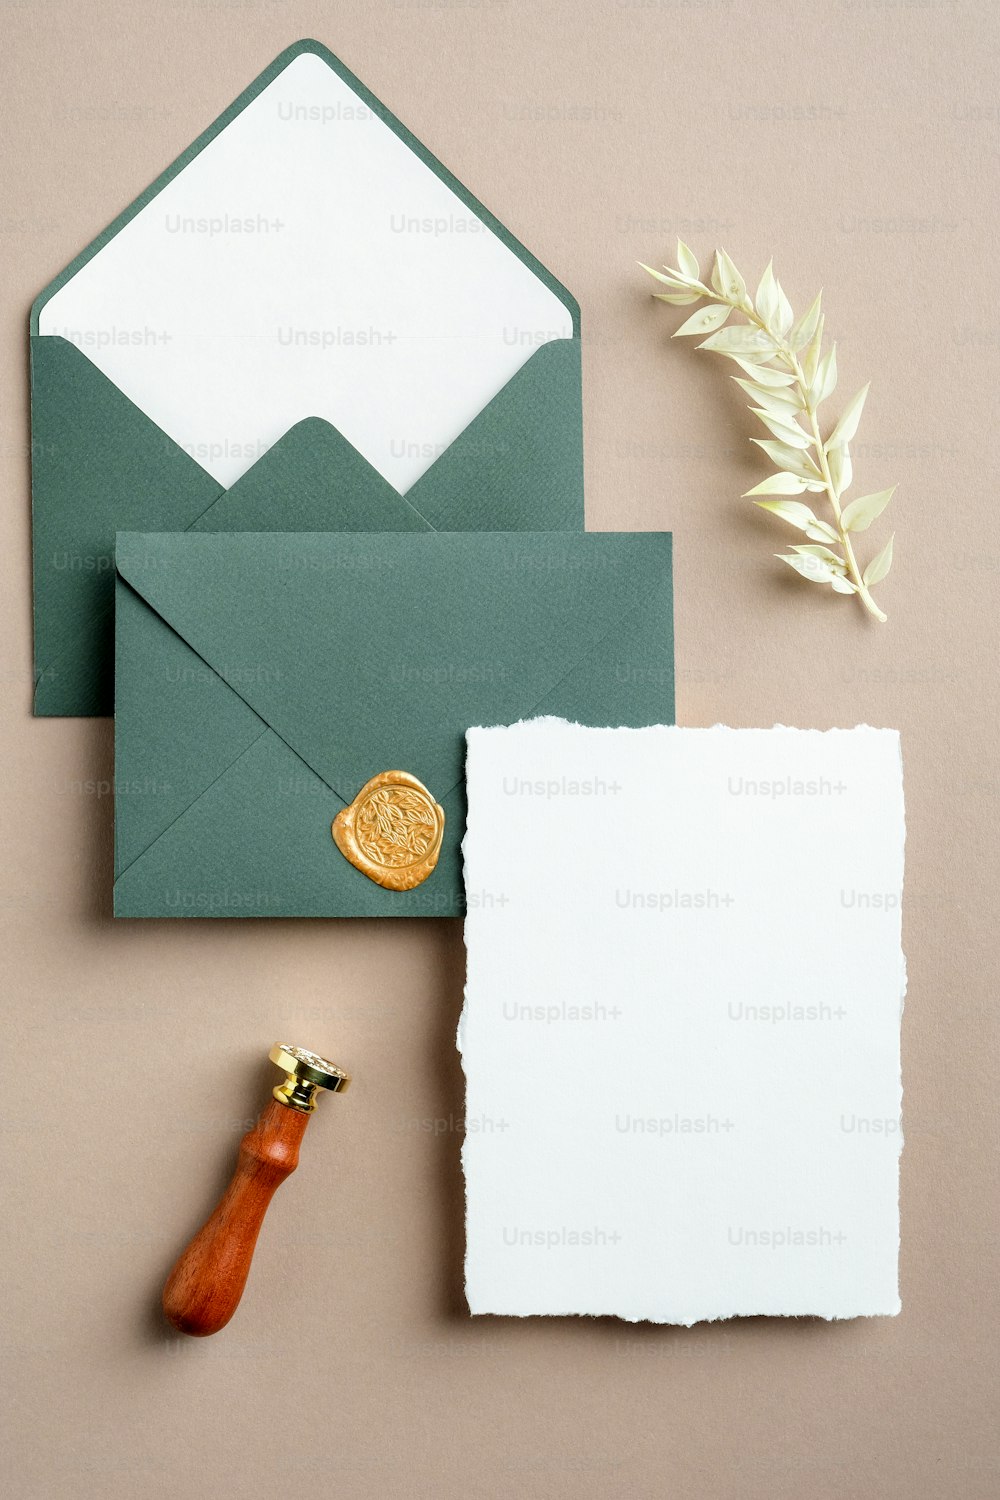 結婚式の文房具セットトップビュー。フラットレイブランク招待状モックアップ、緑色の封筒、ワックスシールスタンプ、ドライフラワー。